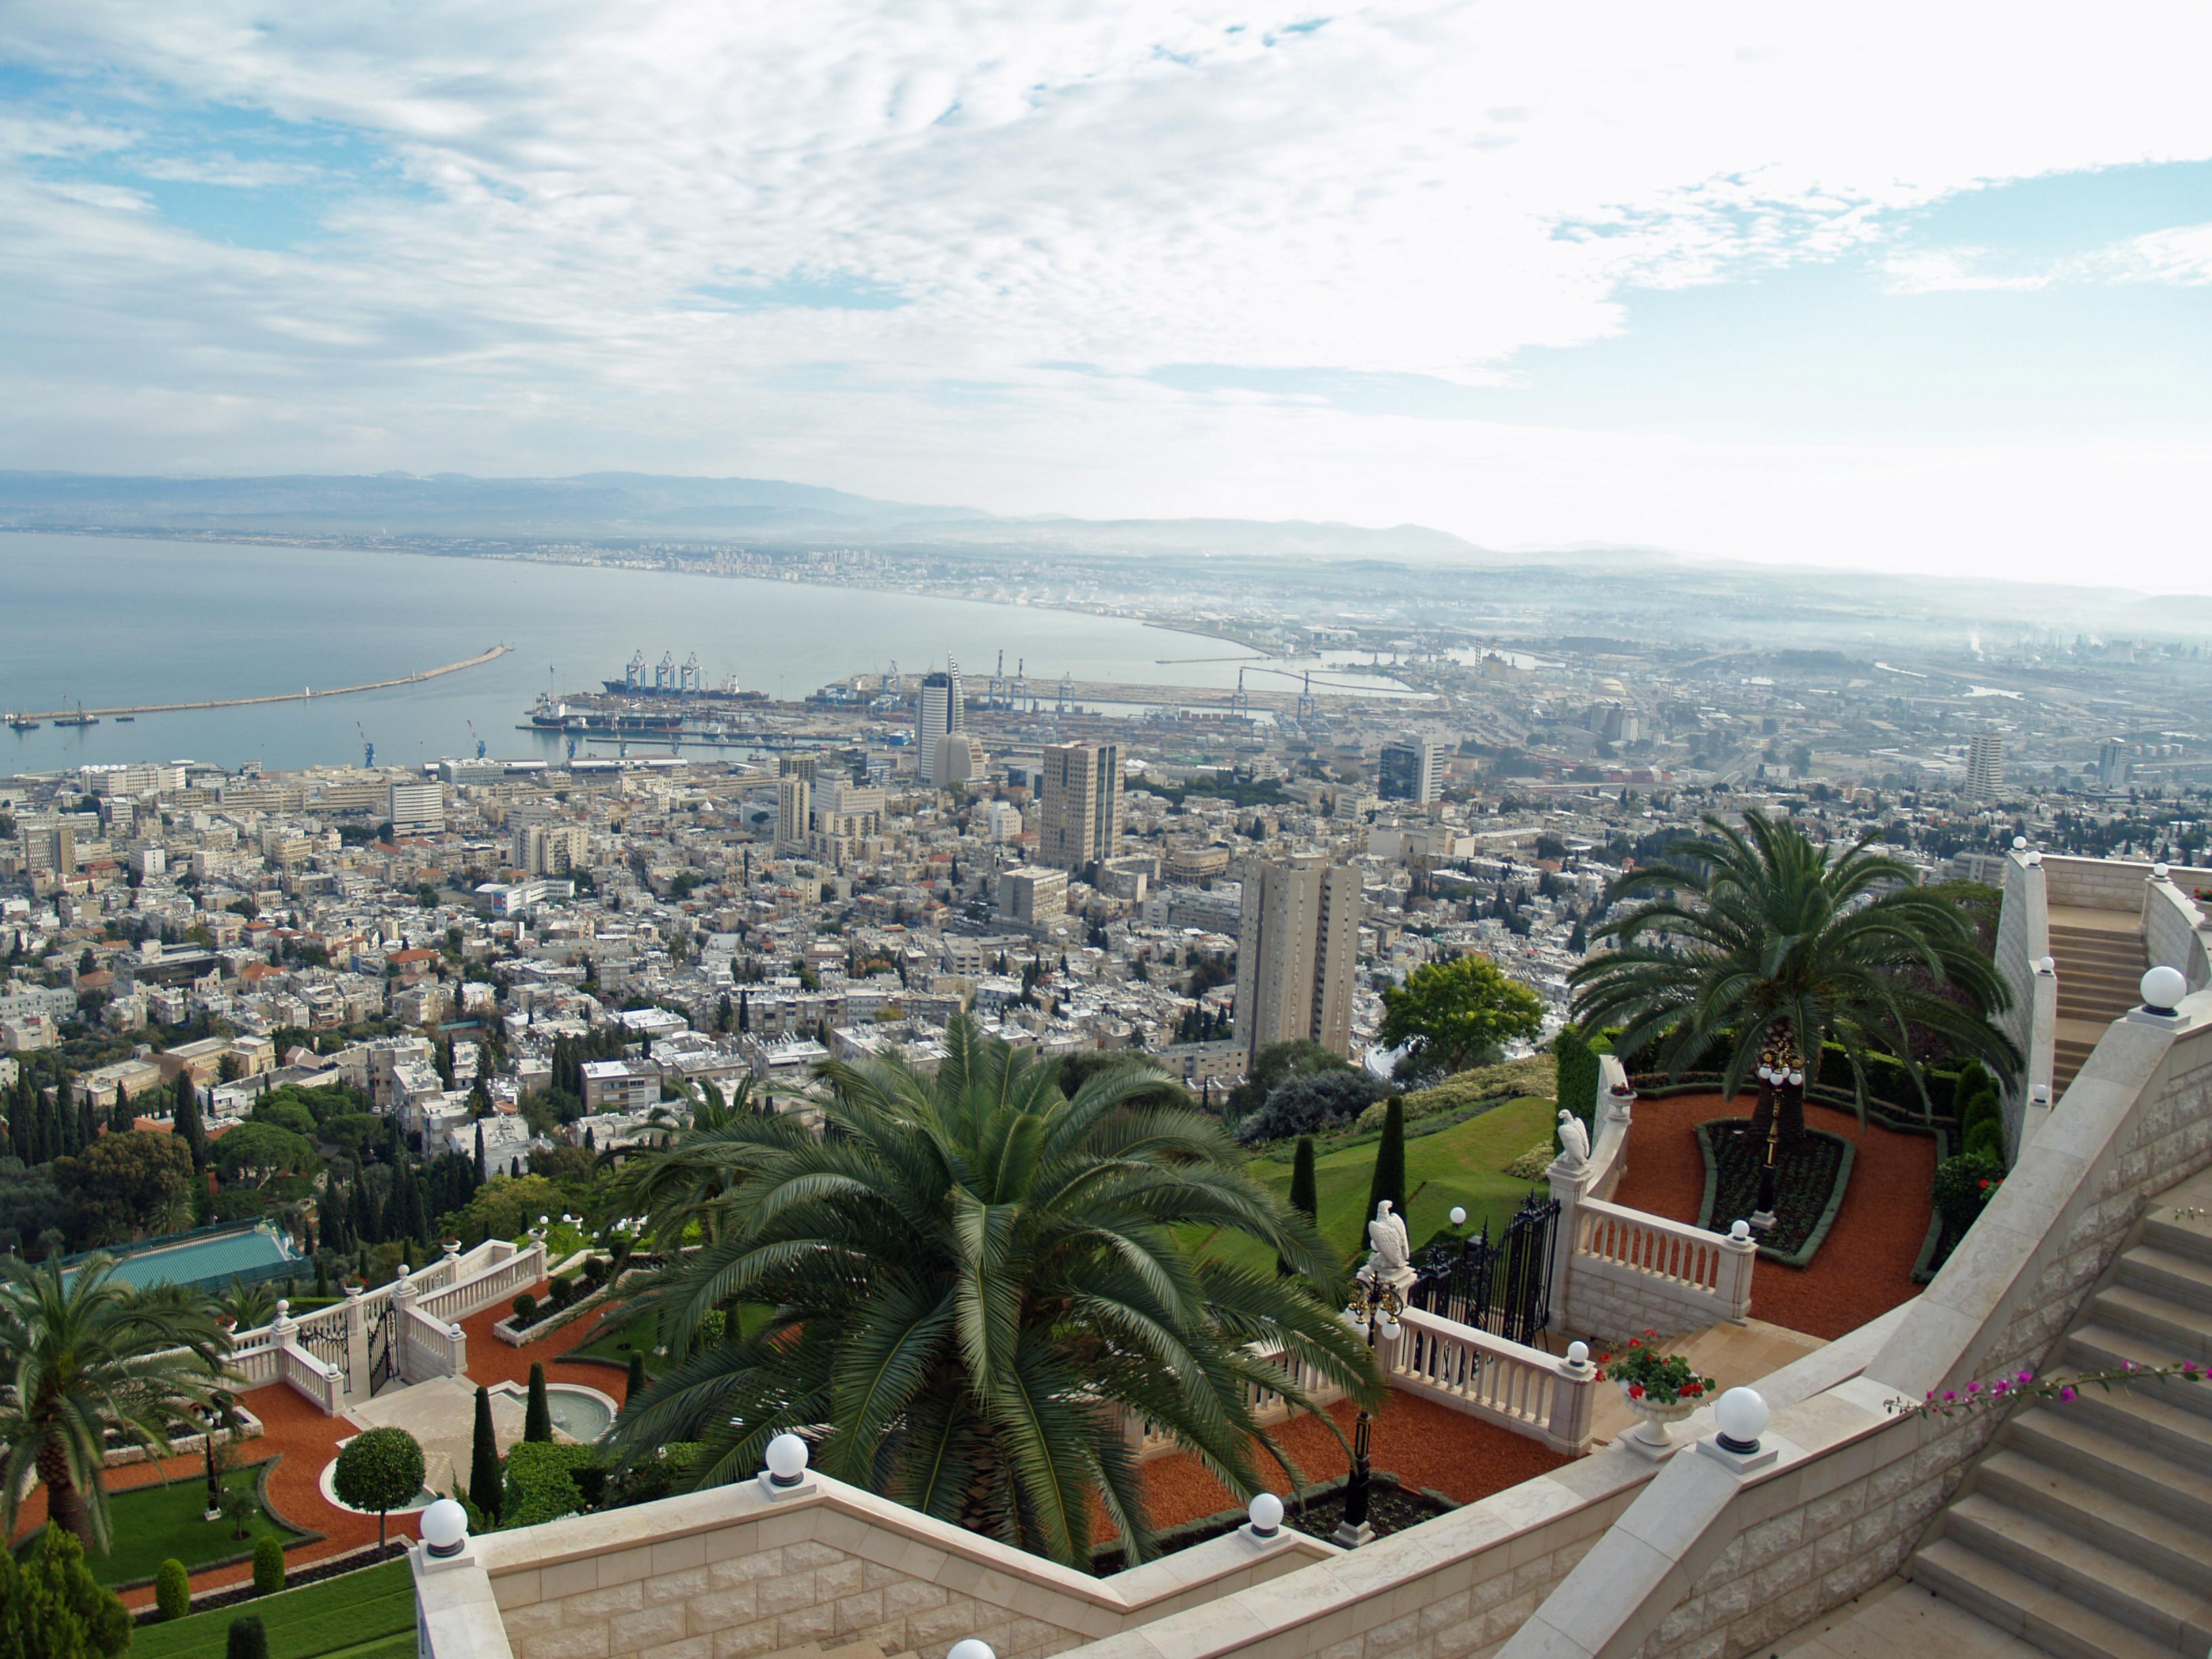 Haifa_Israel_by_David_Shankbone.jpg